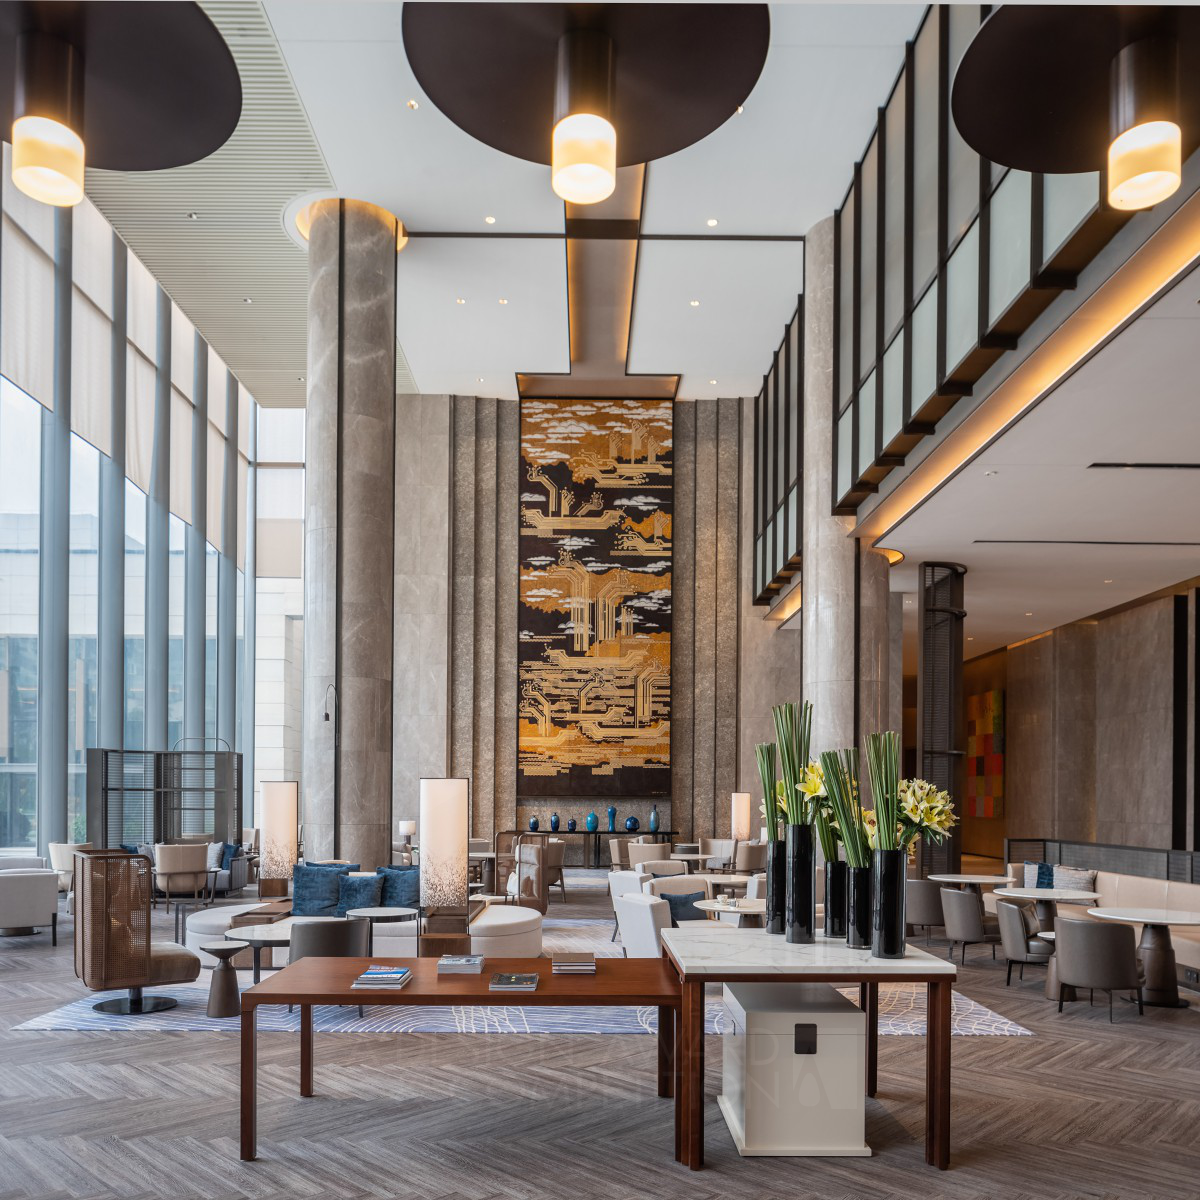 Fuzhou Marriott Riverside Hotel by Bo Liu